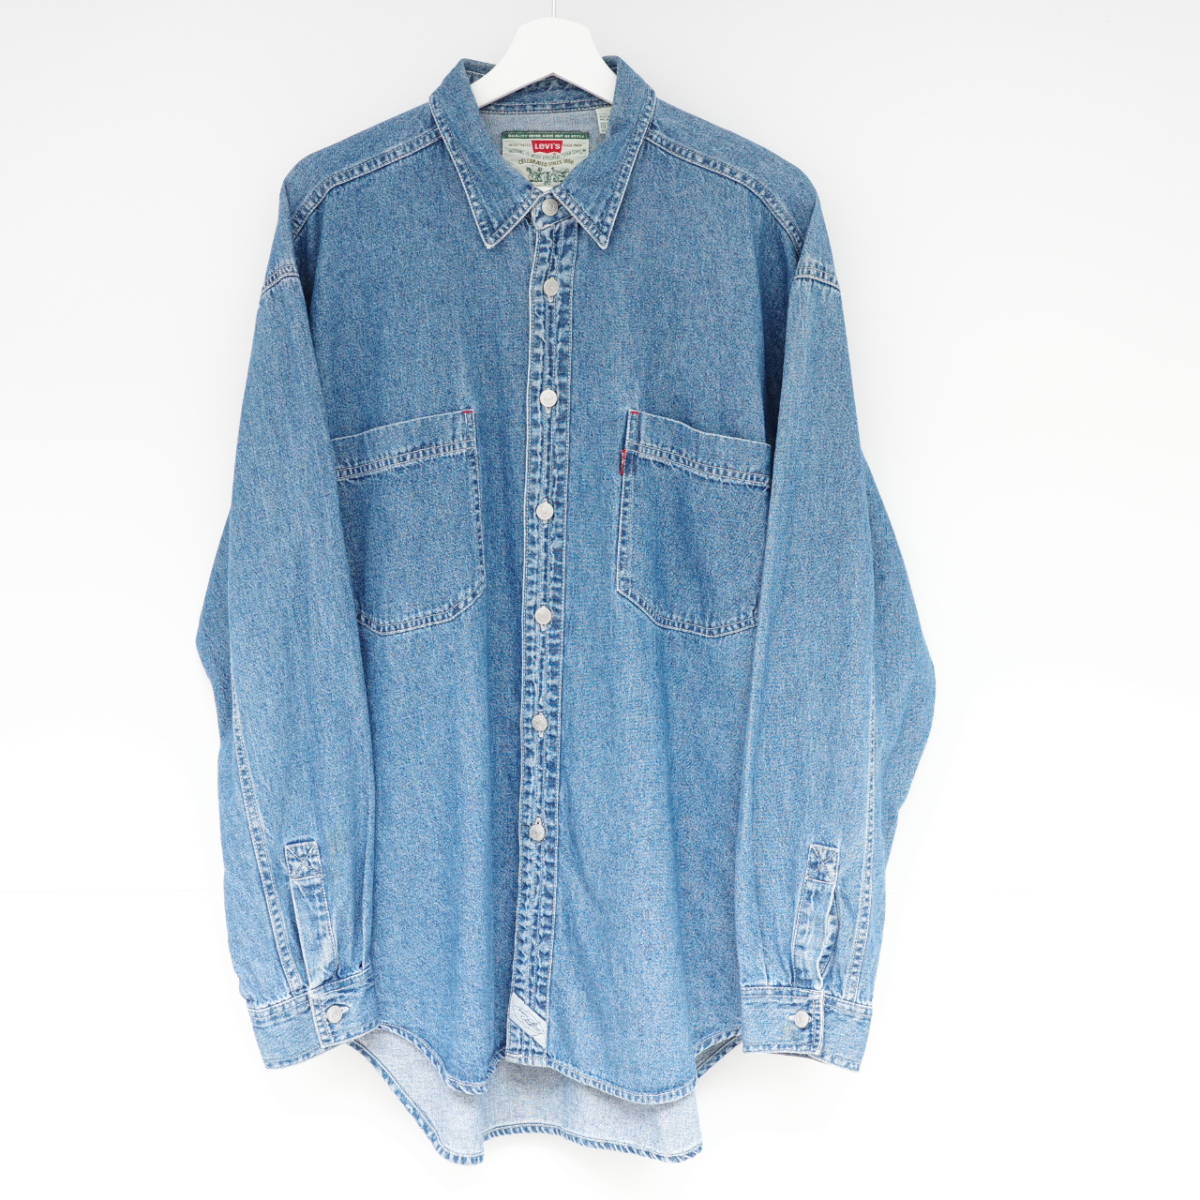 リーバイス メタルボタン デニムシャツ Lサイズ Levi's metal button Blue denim shirt 90s 00s vintage